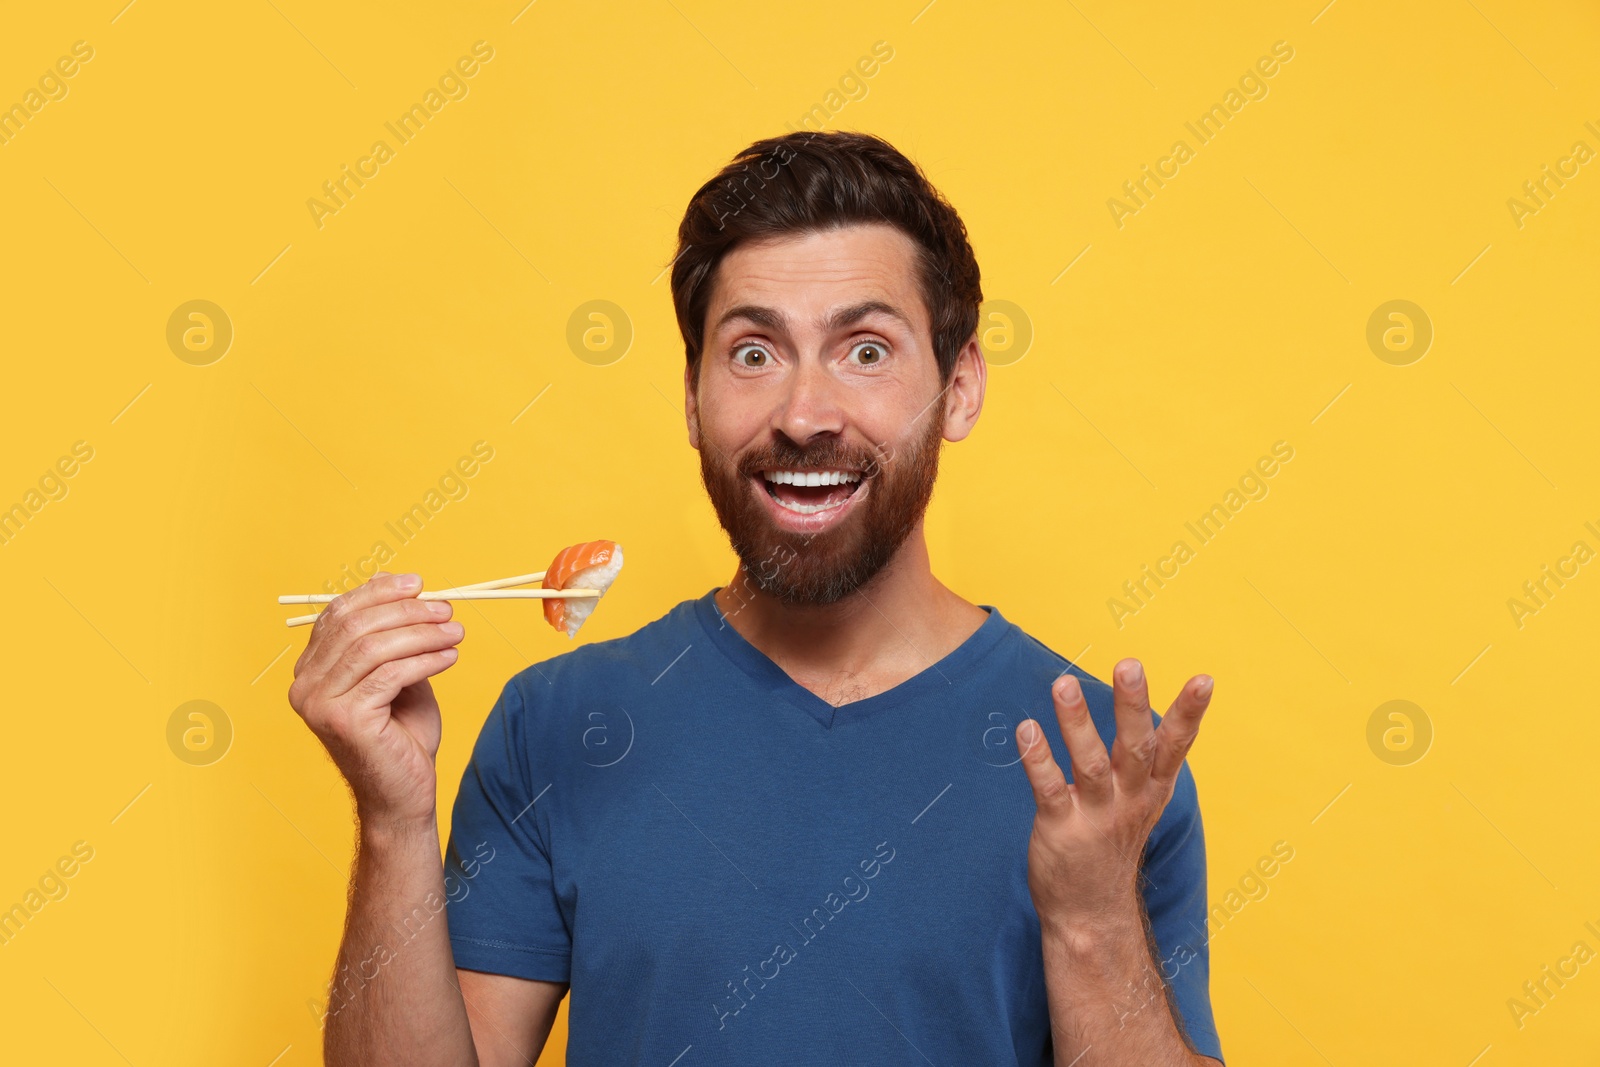 Photo of Emotional man holding sushi with chopsticks on orange background